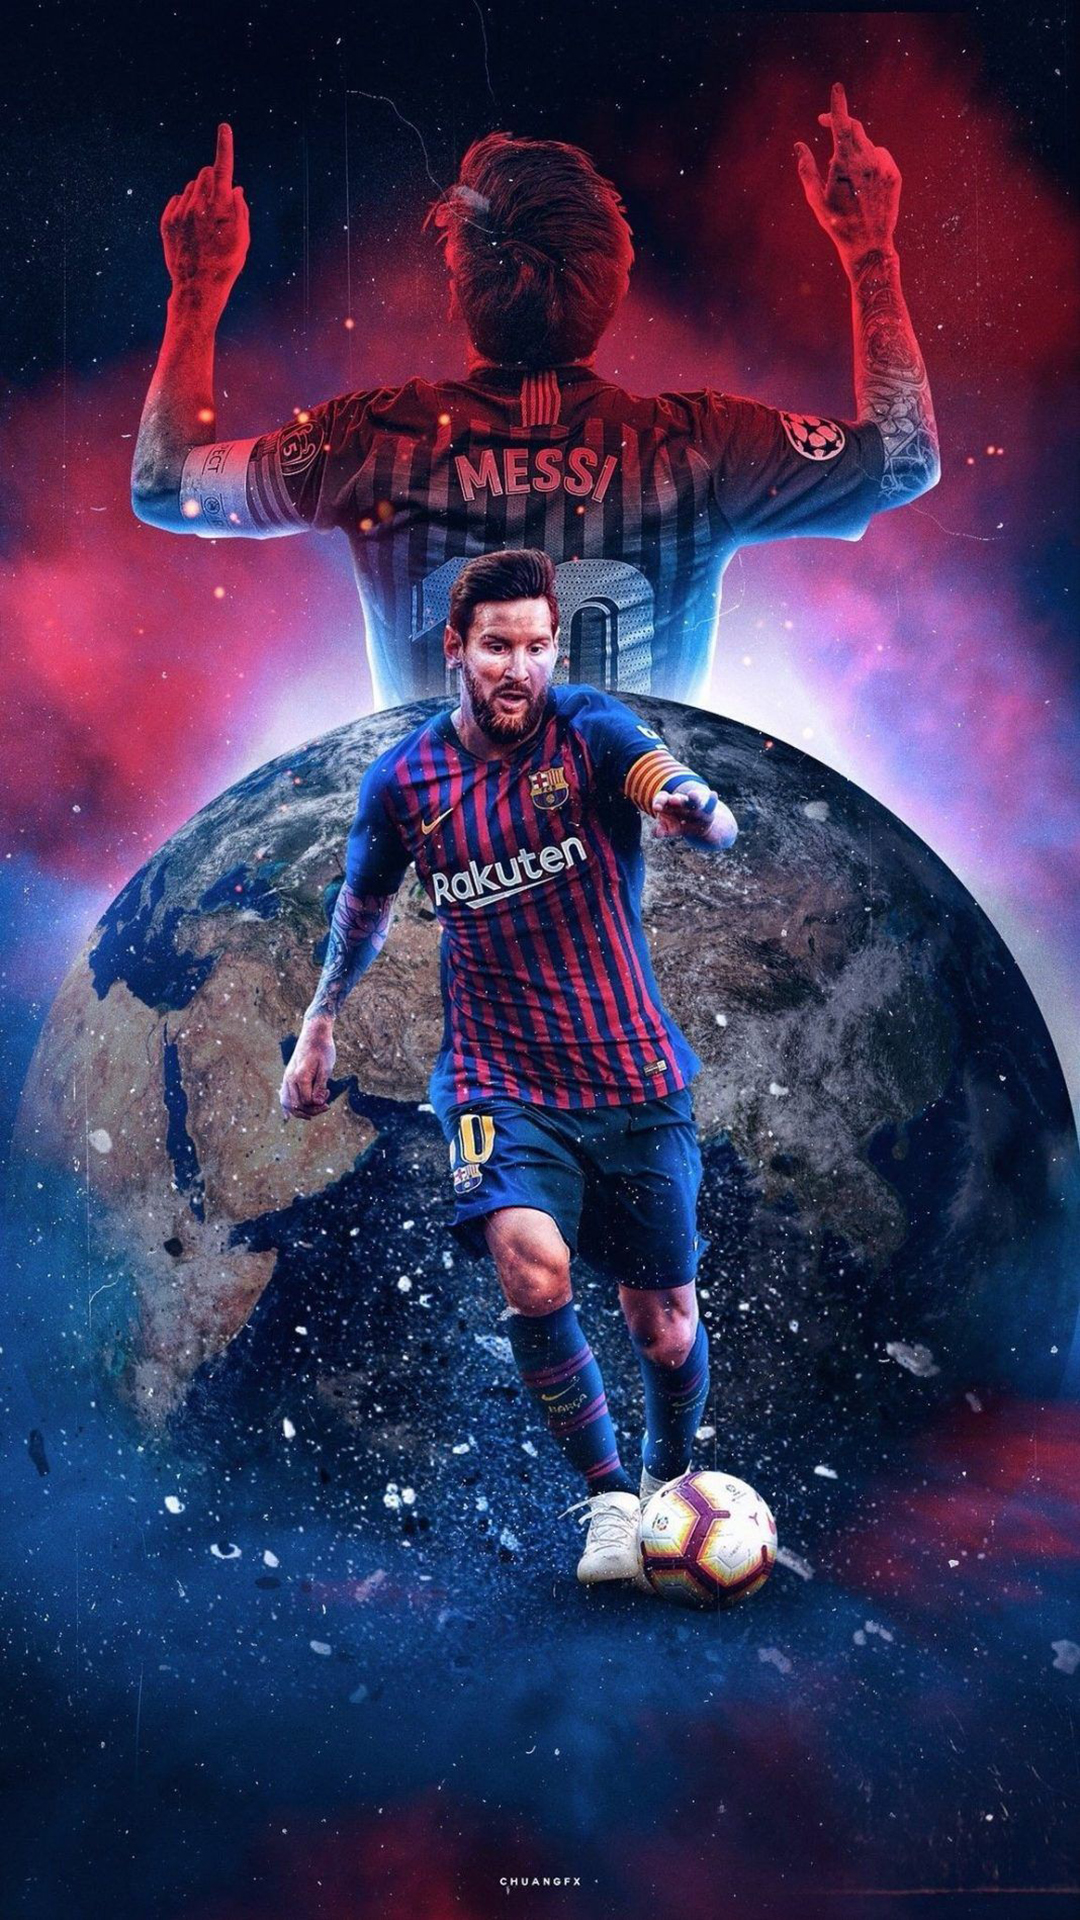 Khám phá vẻ đẹp sống động của siêu sao bóng đá Messi với bức ảnh 3D độc đáo. Bạn sẽ nhìn thấy những chi tiết tinh tế, đường nét mượt mà và màu sắc sáng tạo. Hãy cùng chiêm ngưỡng tài năng của Messi như chưa bao giờ được trải nghiệm trước đây.